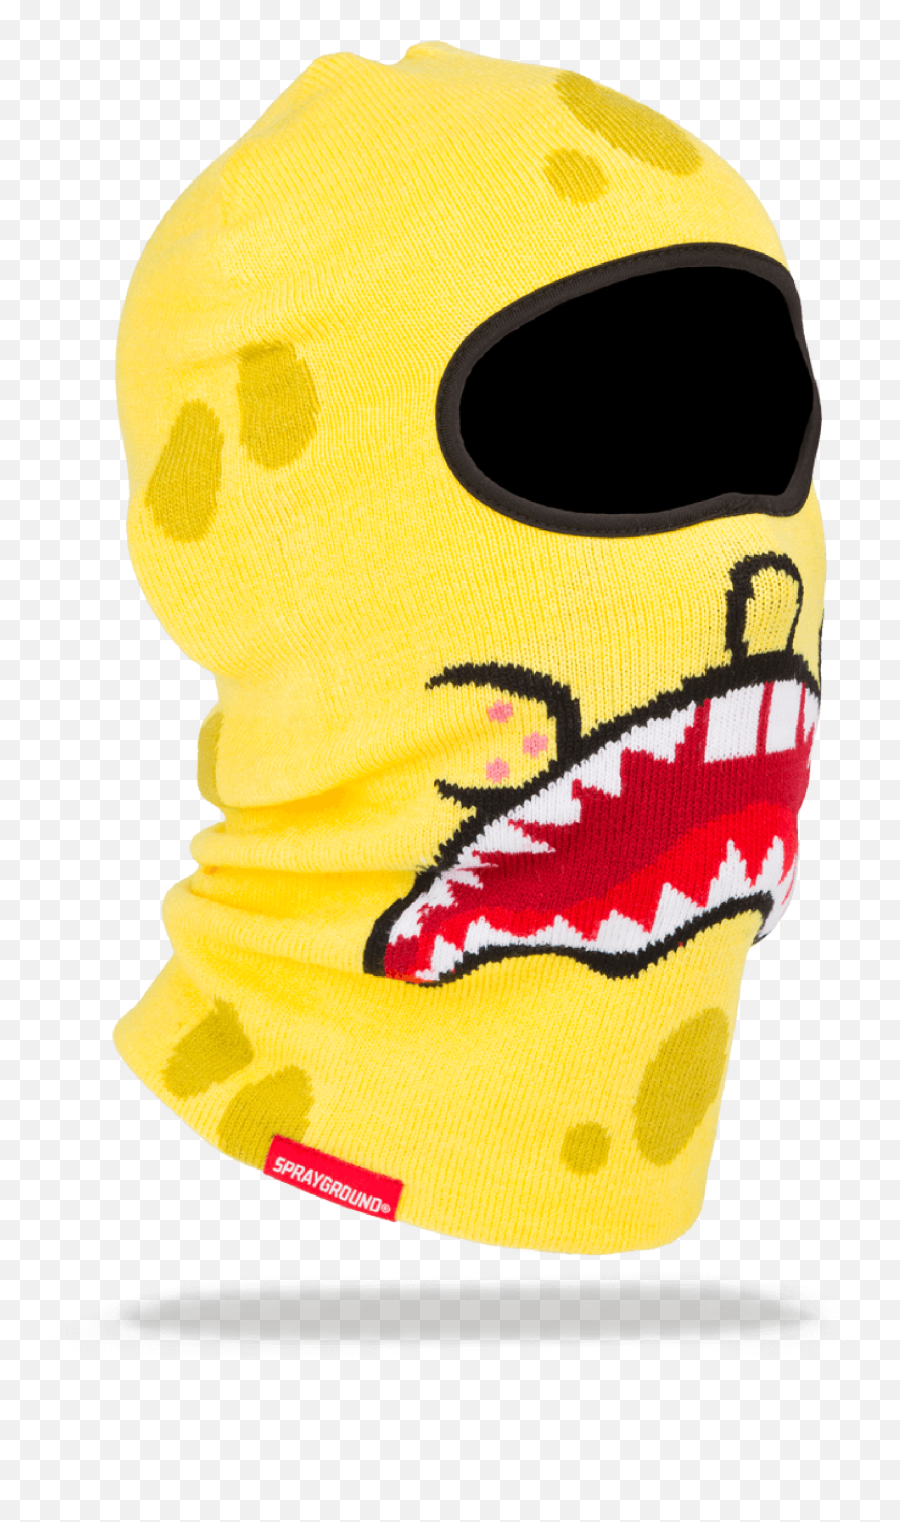 Spongebob Shark Mouth Ski Mask Sprayground Backpacks Bags Png Transparent